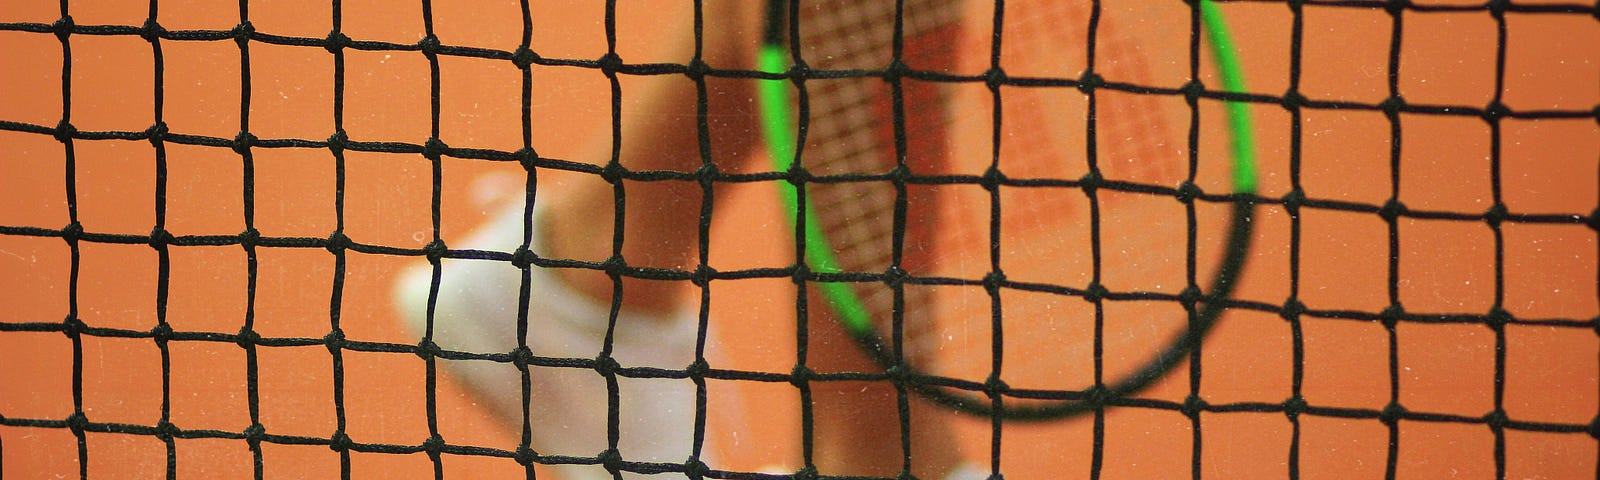 A photograph of the legs of a tennis player holding a tennis racket next to a tennis ball through a net.